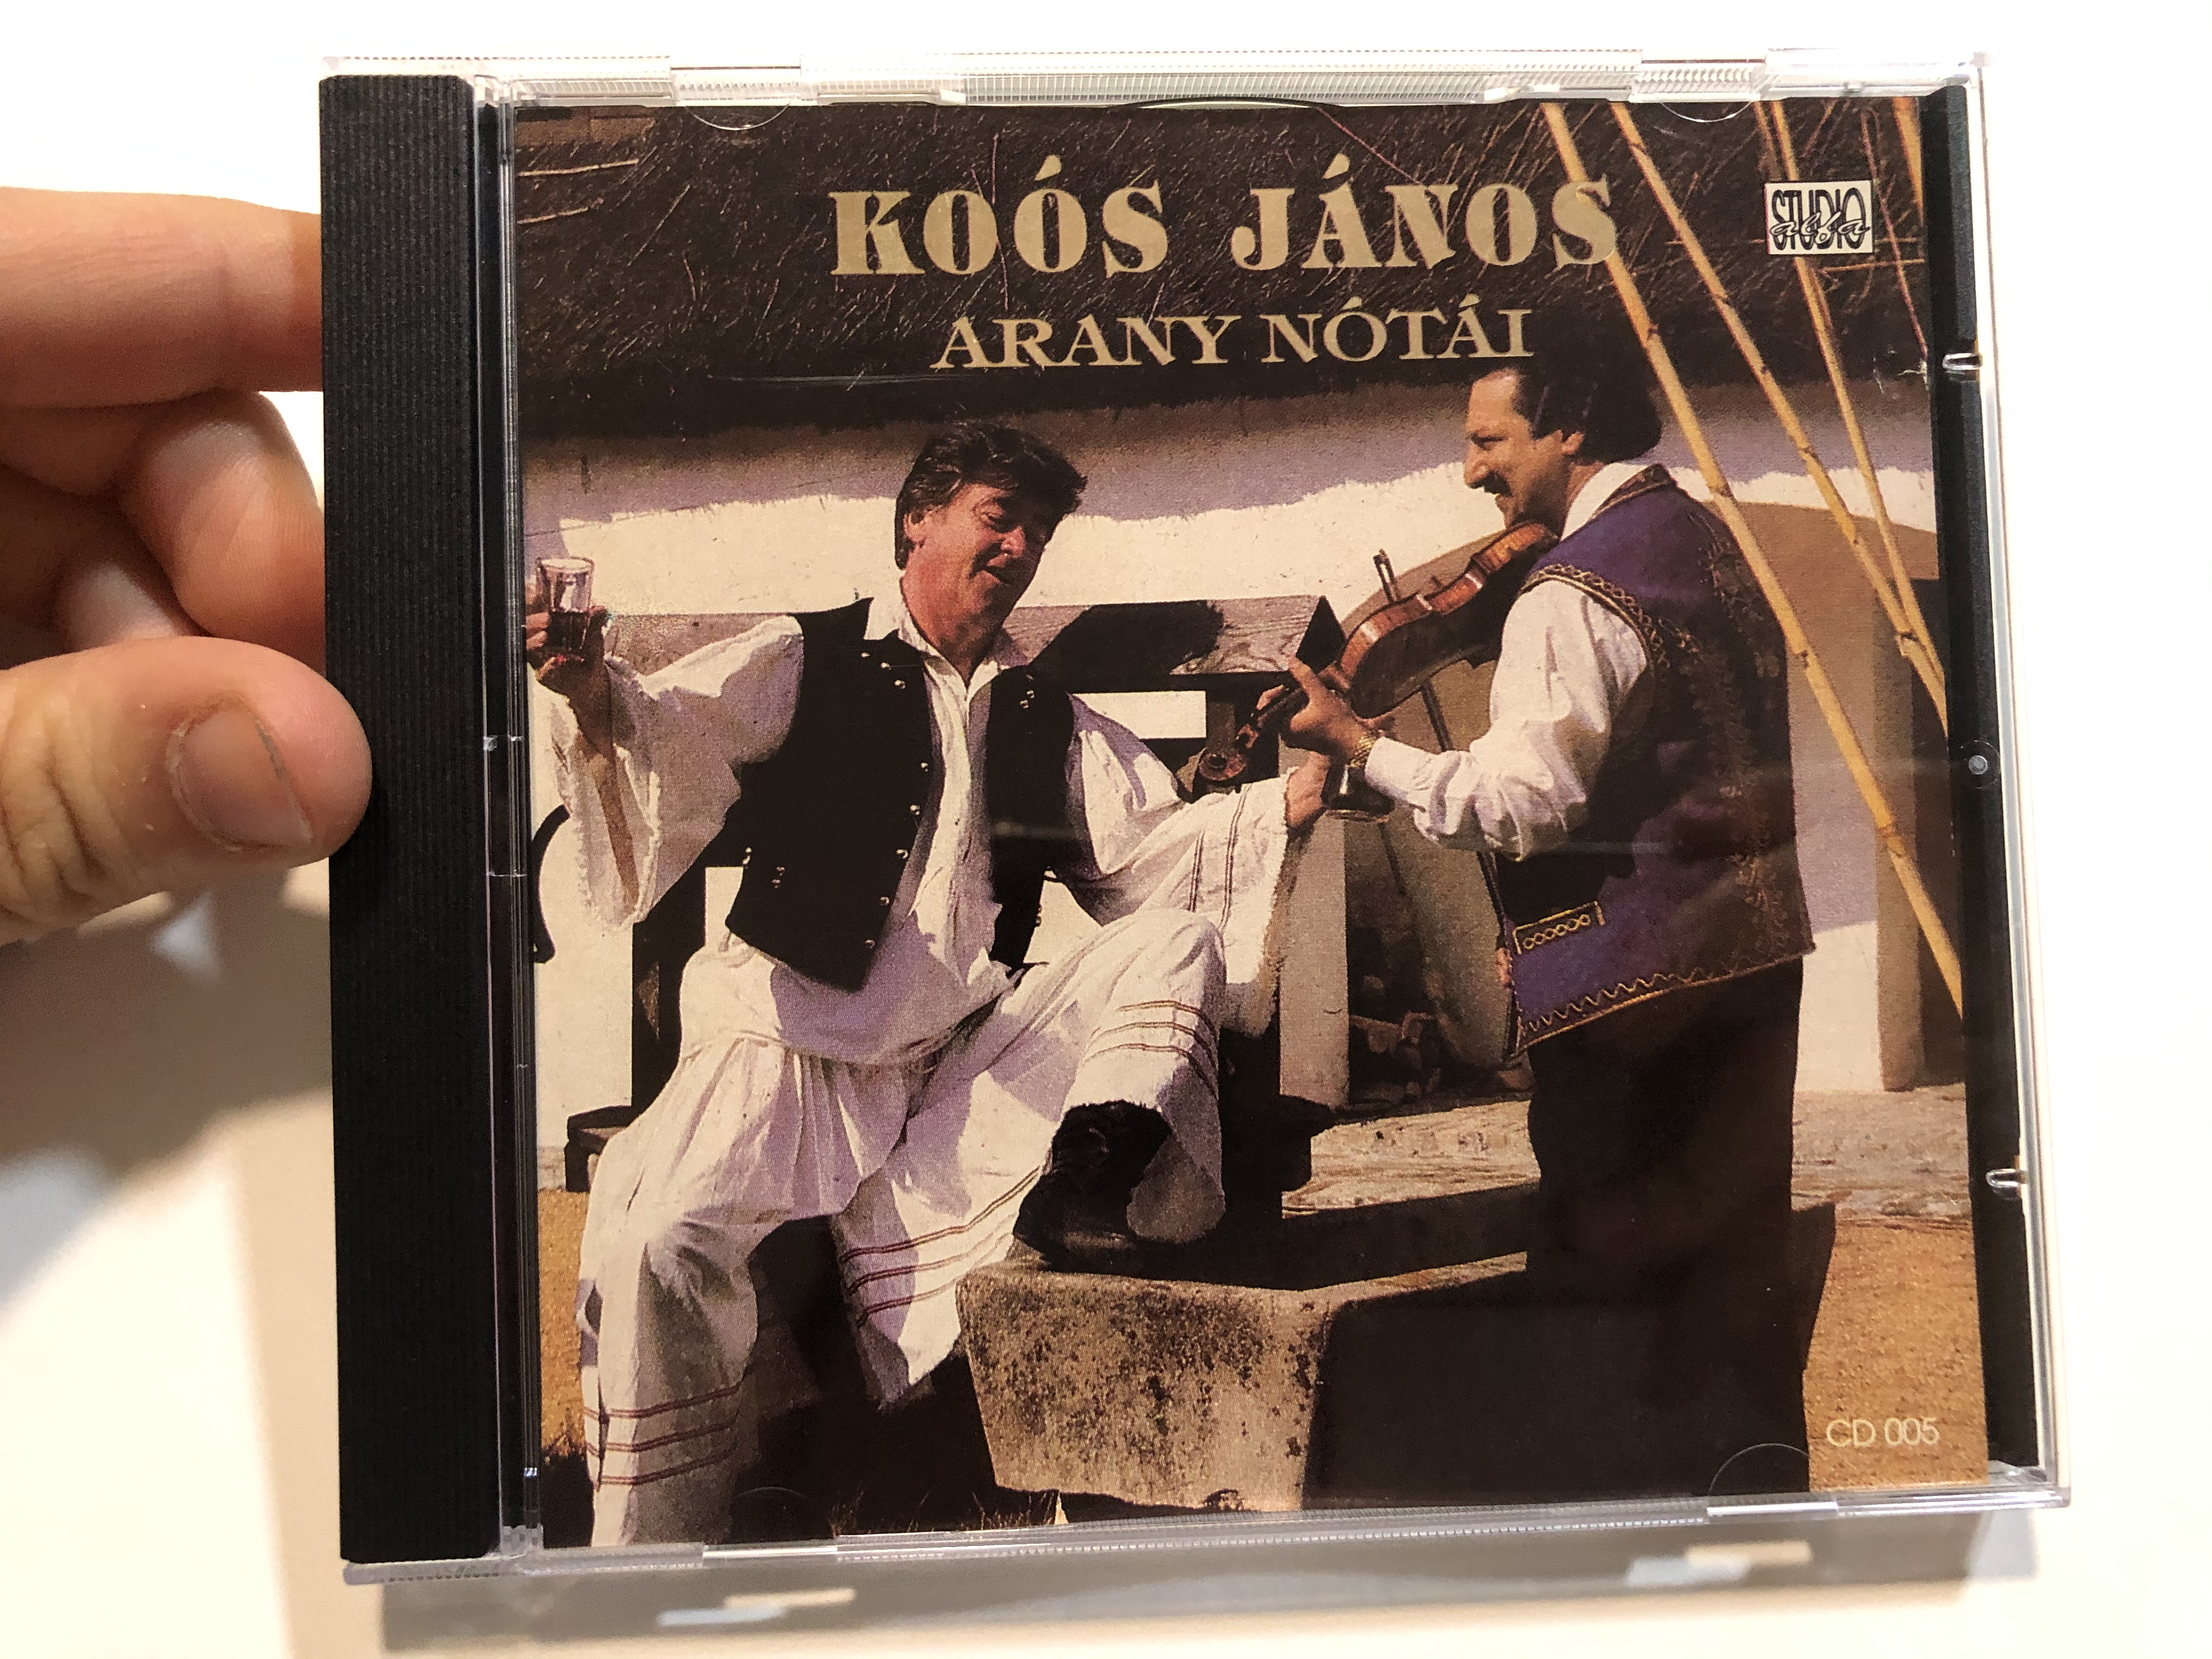 ko-s-j-nos-arany-n-t-i-alfa-studio-audio-cd-cd-005-1-.jpg